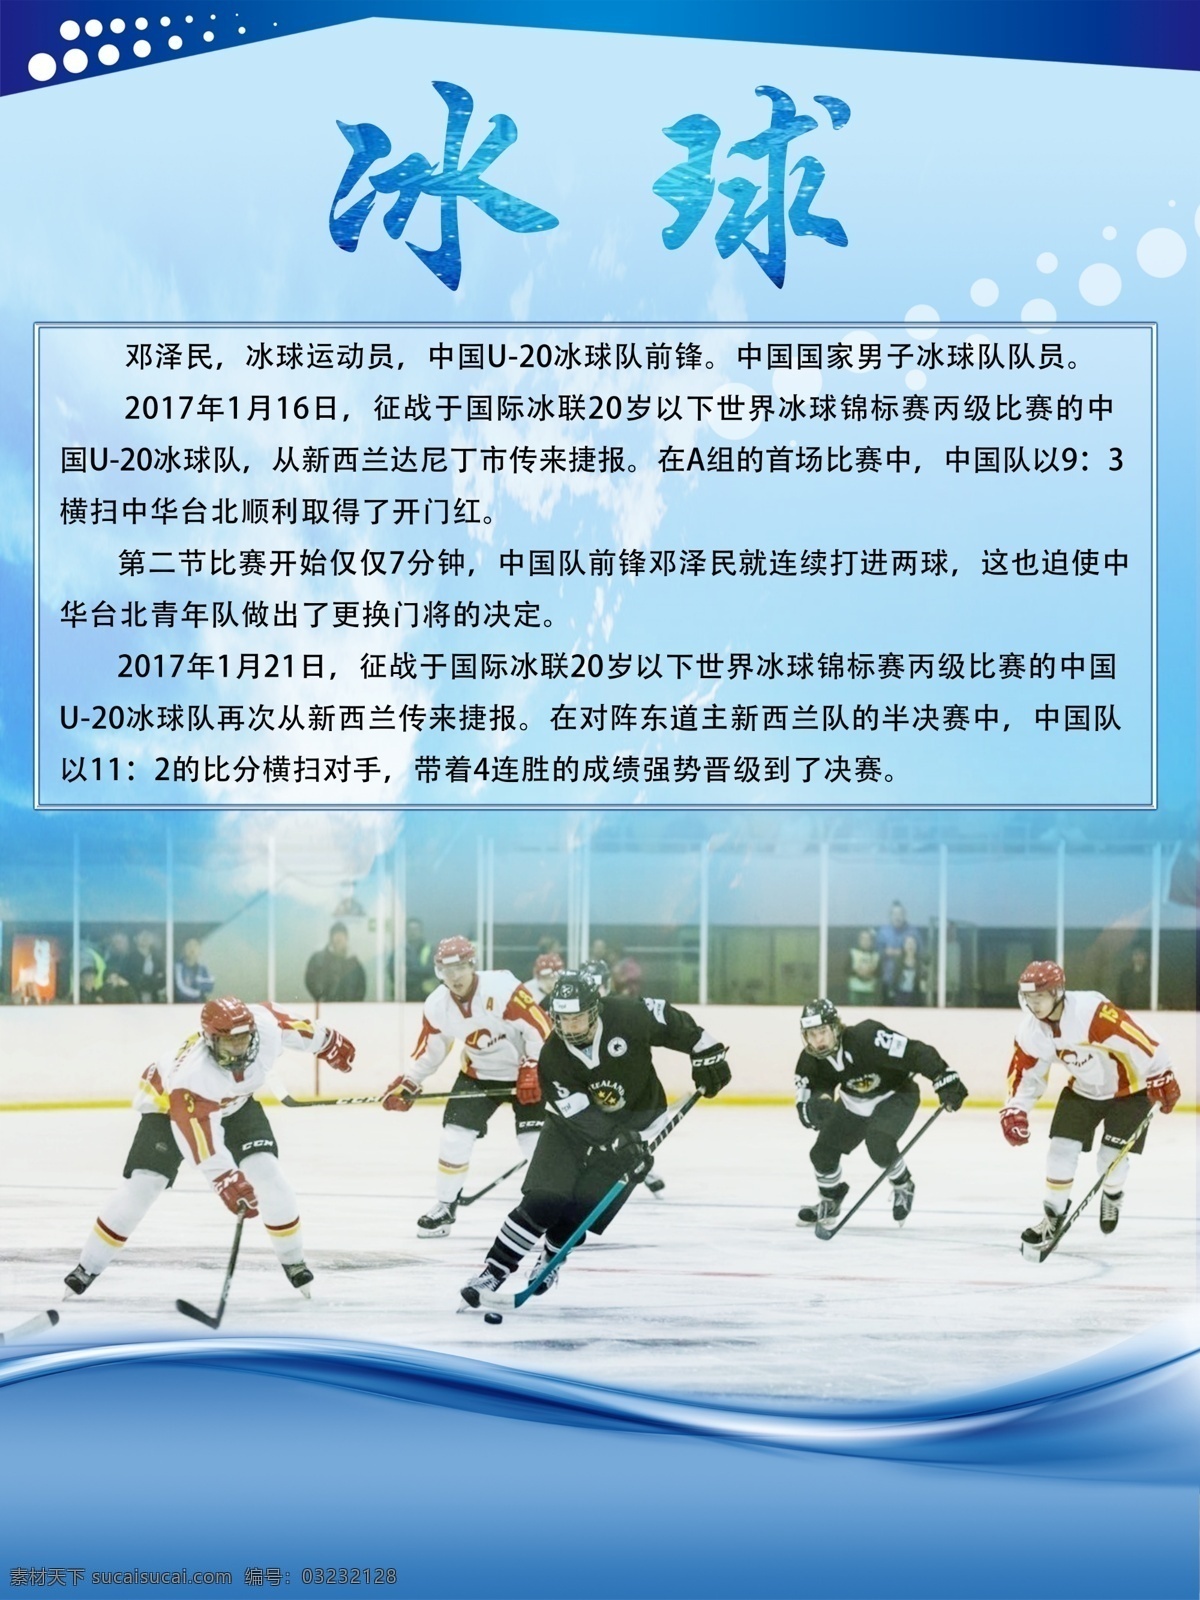 冬季滑雪 冰球项目 滑雪 体育运动 体育项目